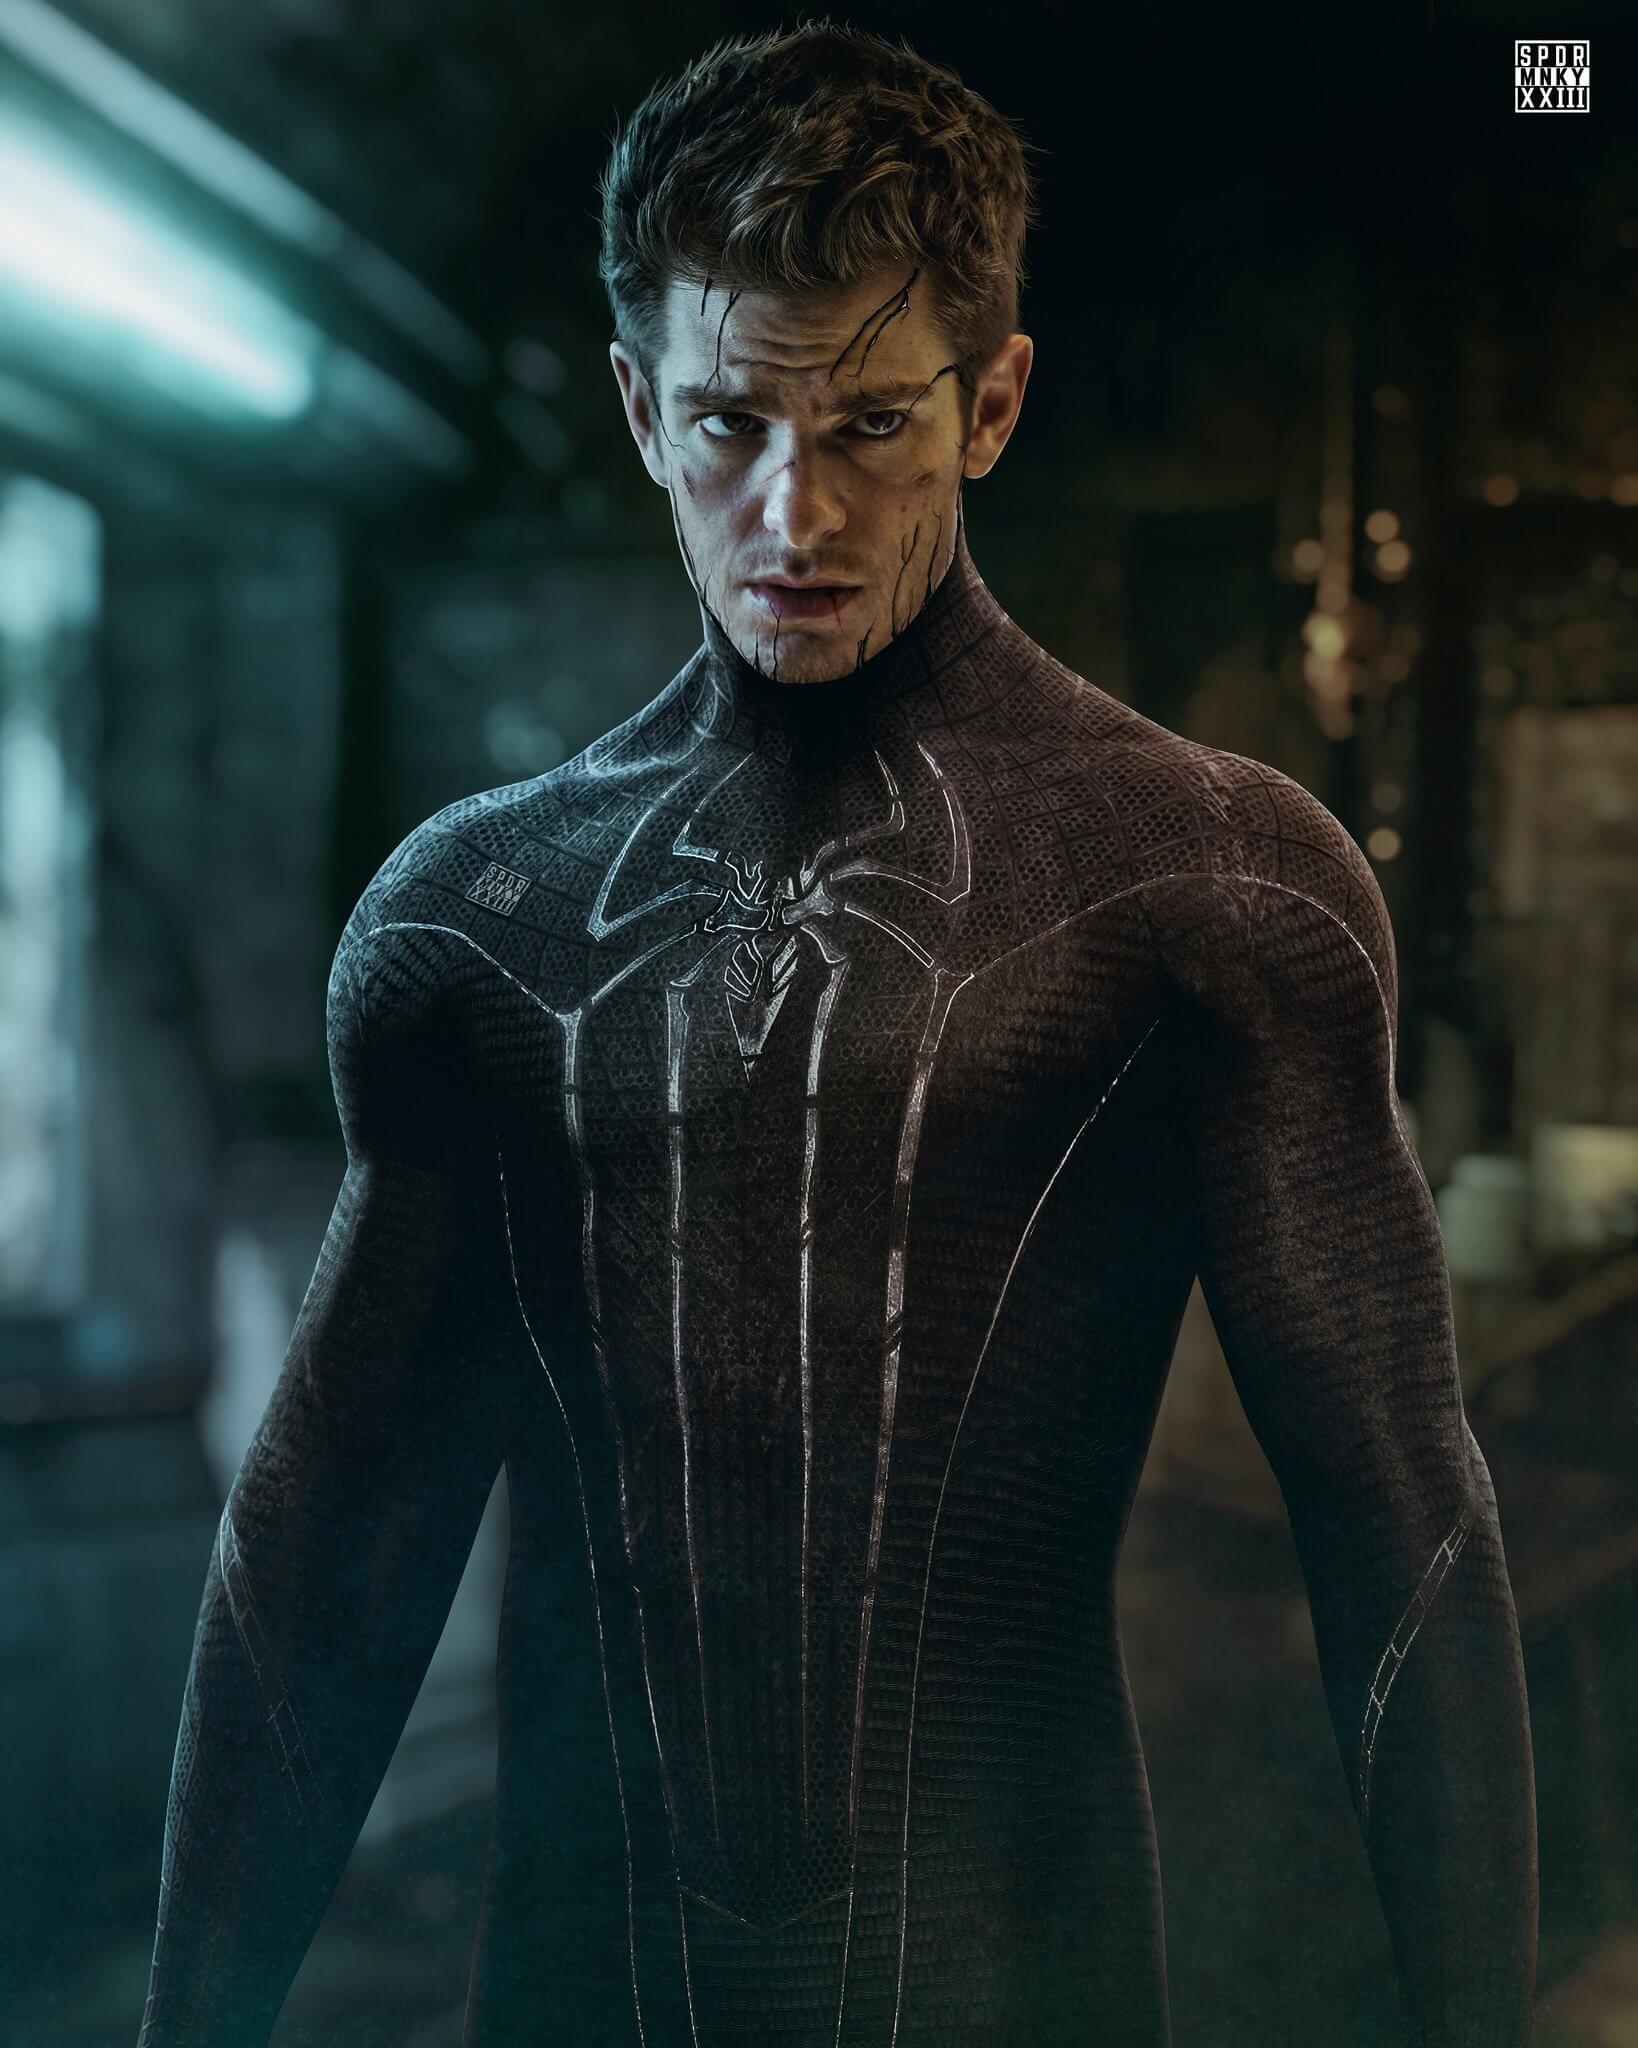 Imagem traz o Homem-Aranha do Andrew Garfield tomado pela simbionte